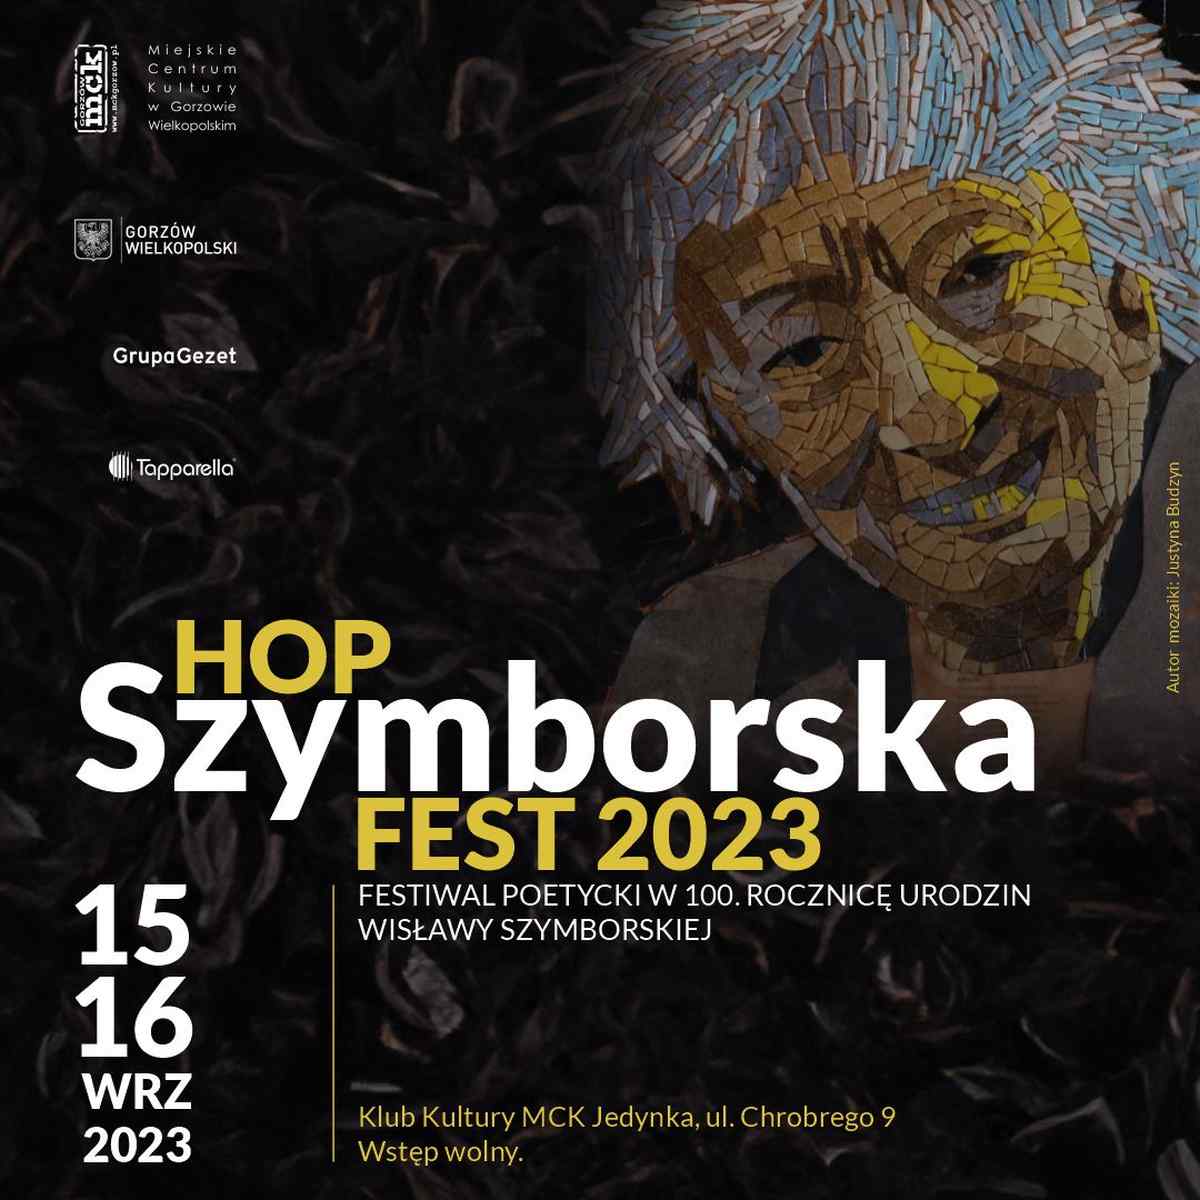 Grafika wpisu HopSzymborska Fest 2023